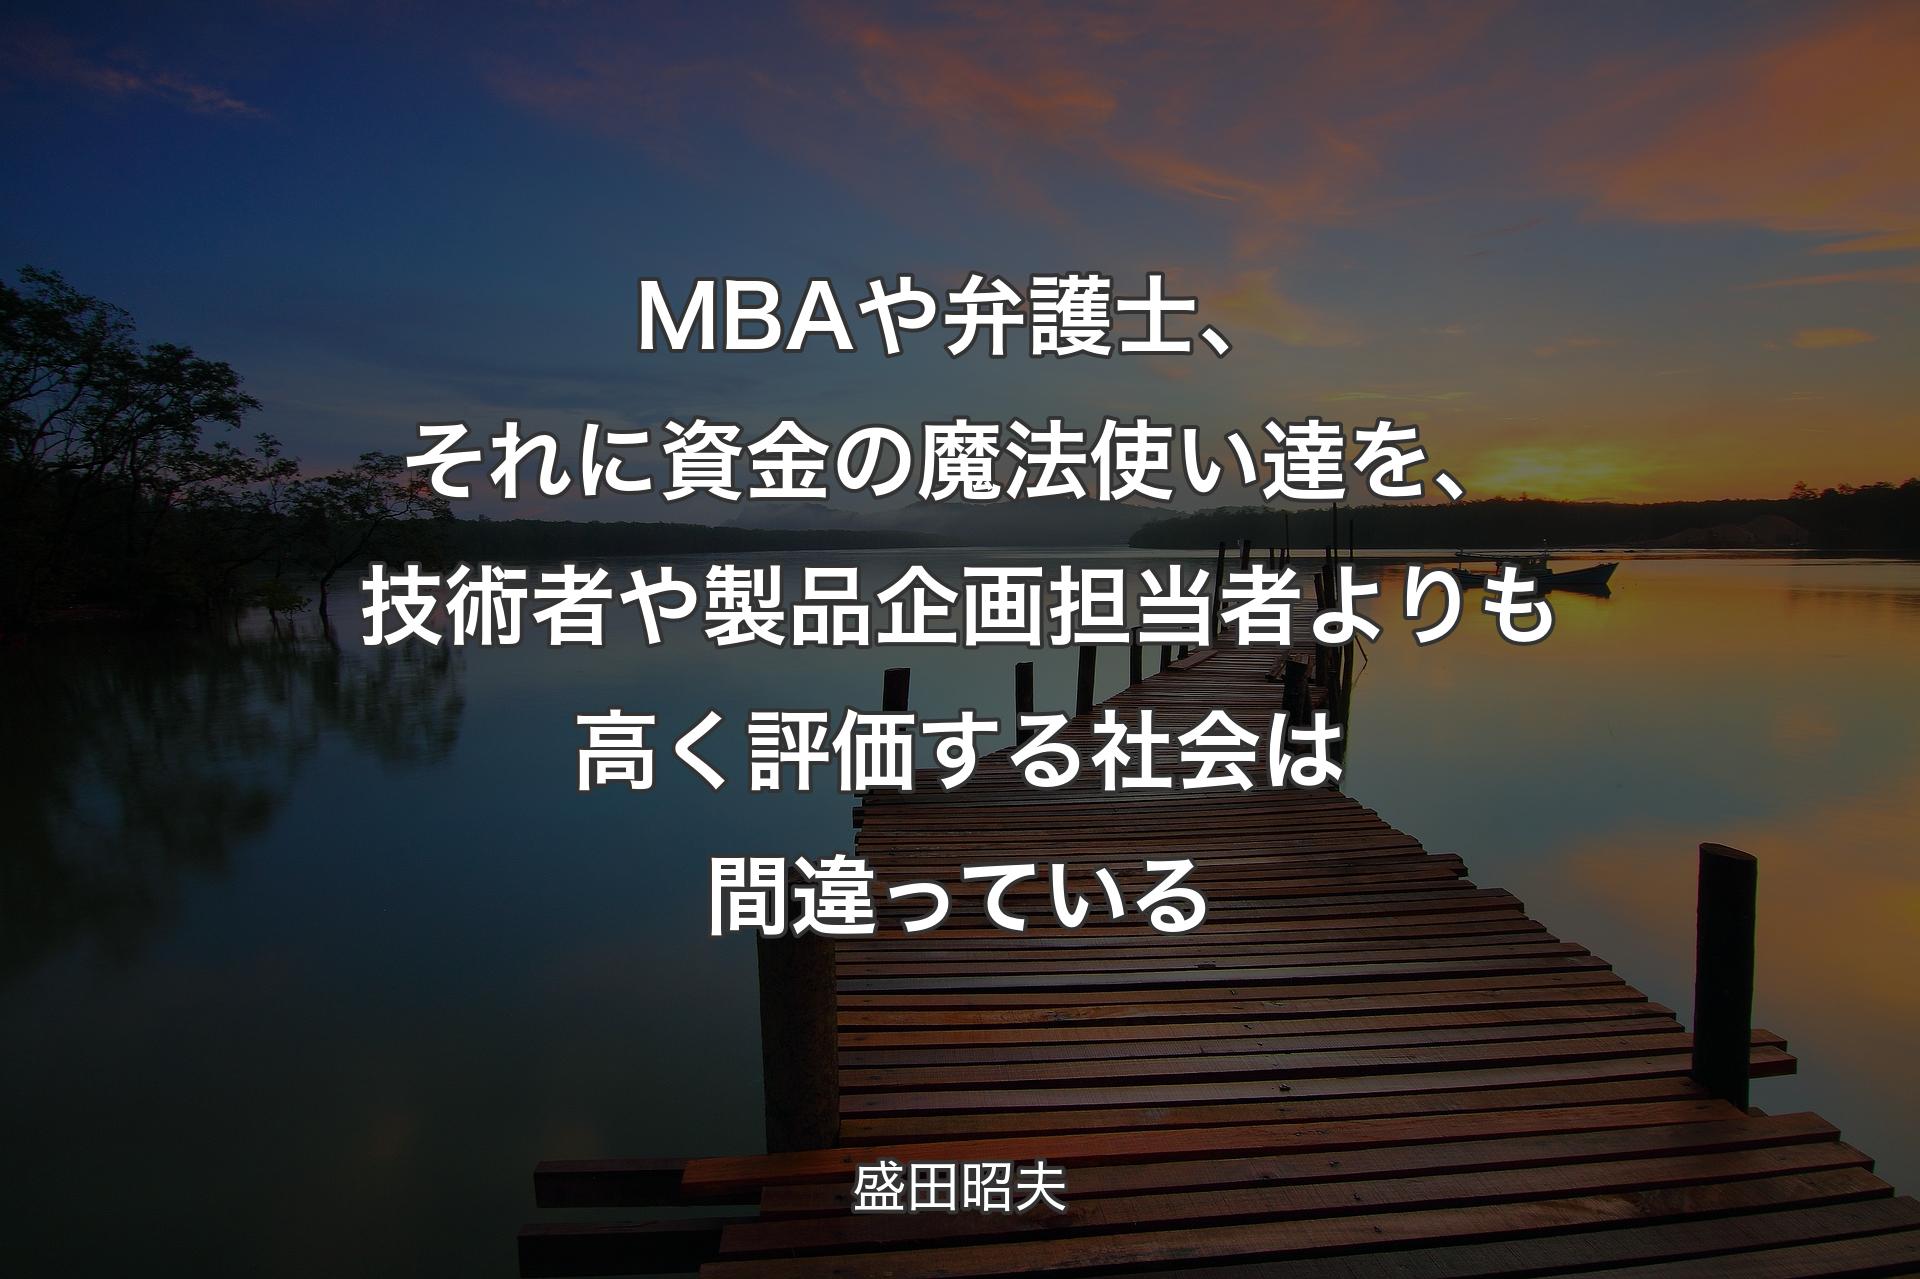 【背景3】MBAや弁護士、それに資金の魔法使い達を、技術者や製品企画担当者よりも高く評価する社会は間違っている - 盛田昭夫